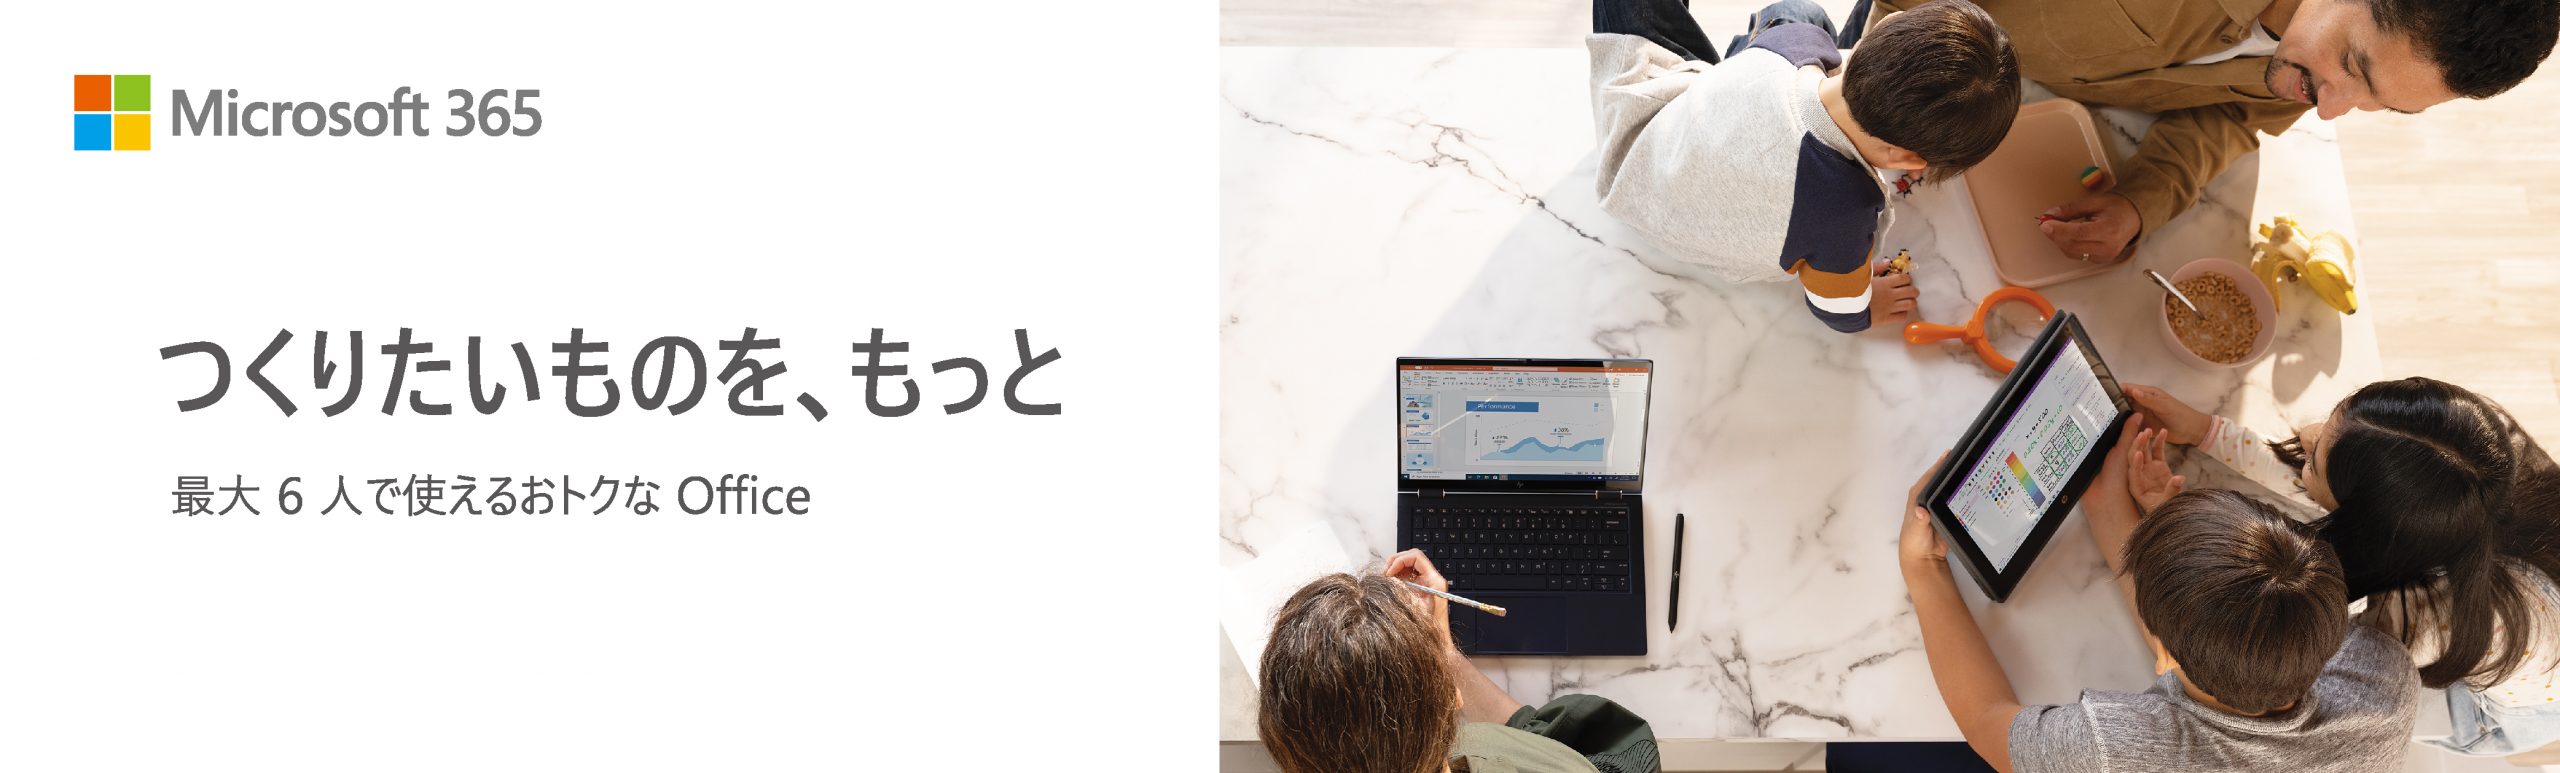 家族向けに最大6人まで利用可能な｢Microsoft 365 Family｣が7月19日から日本でも提供開始